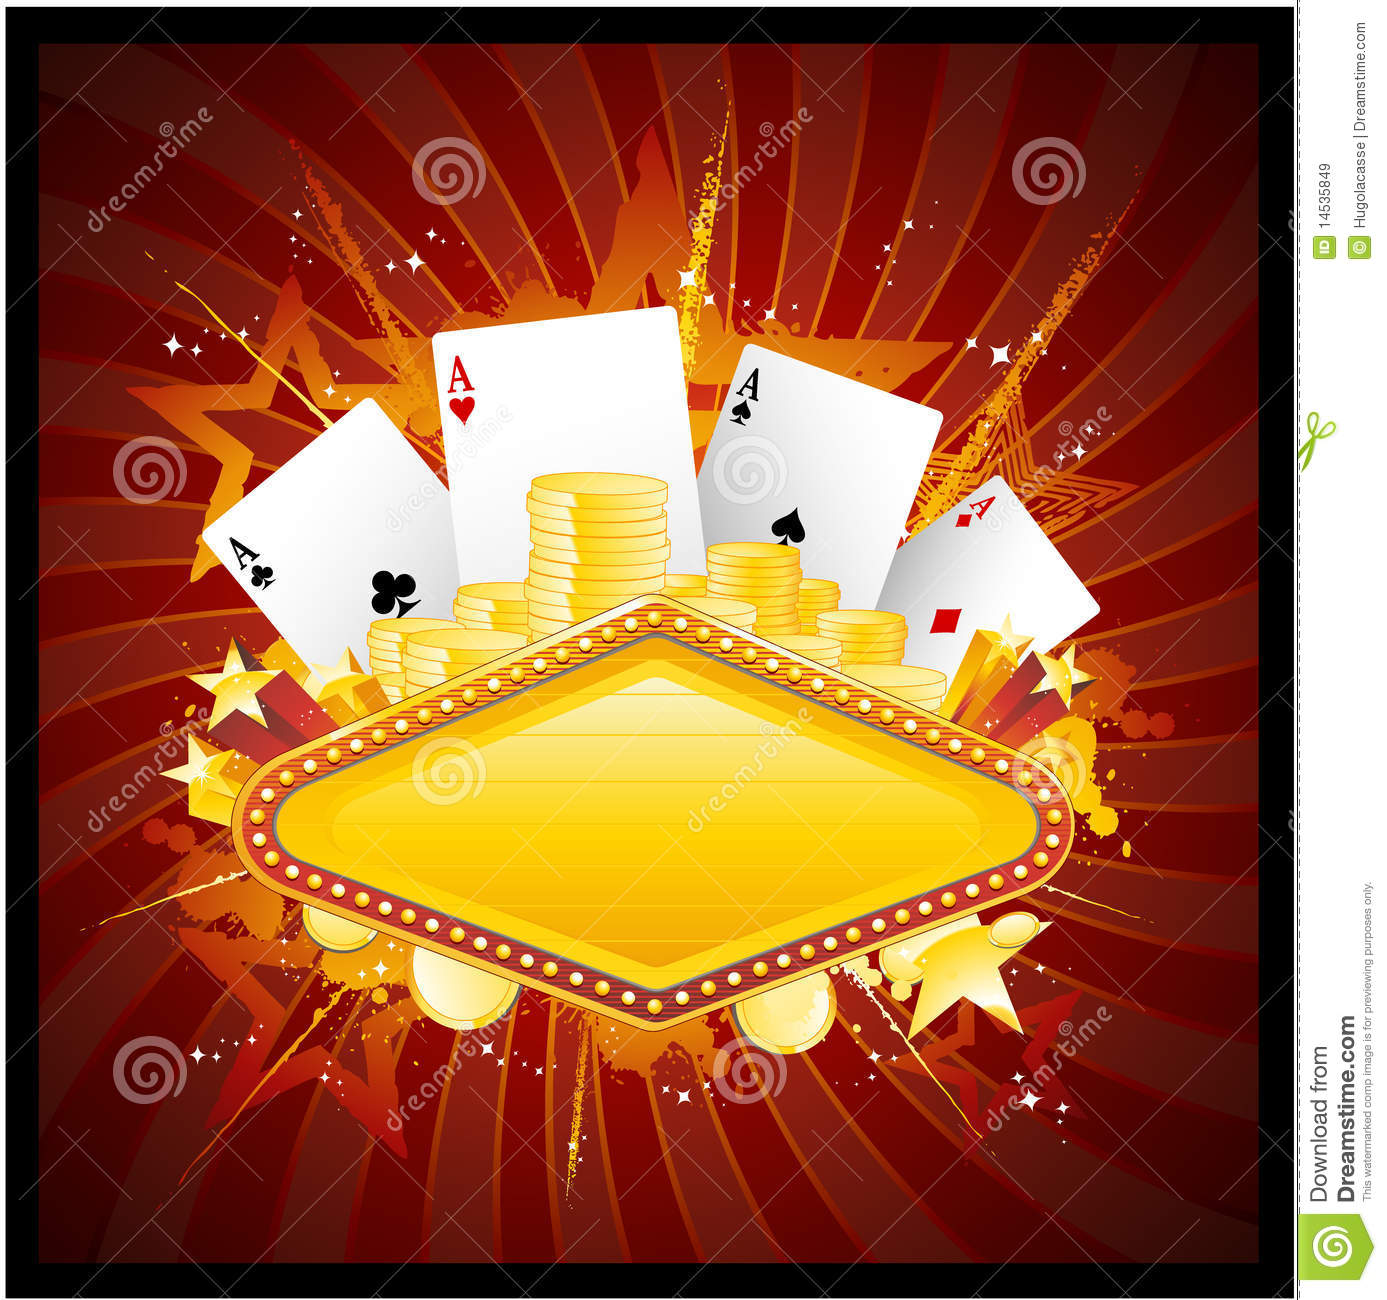 El royale casino app download